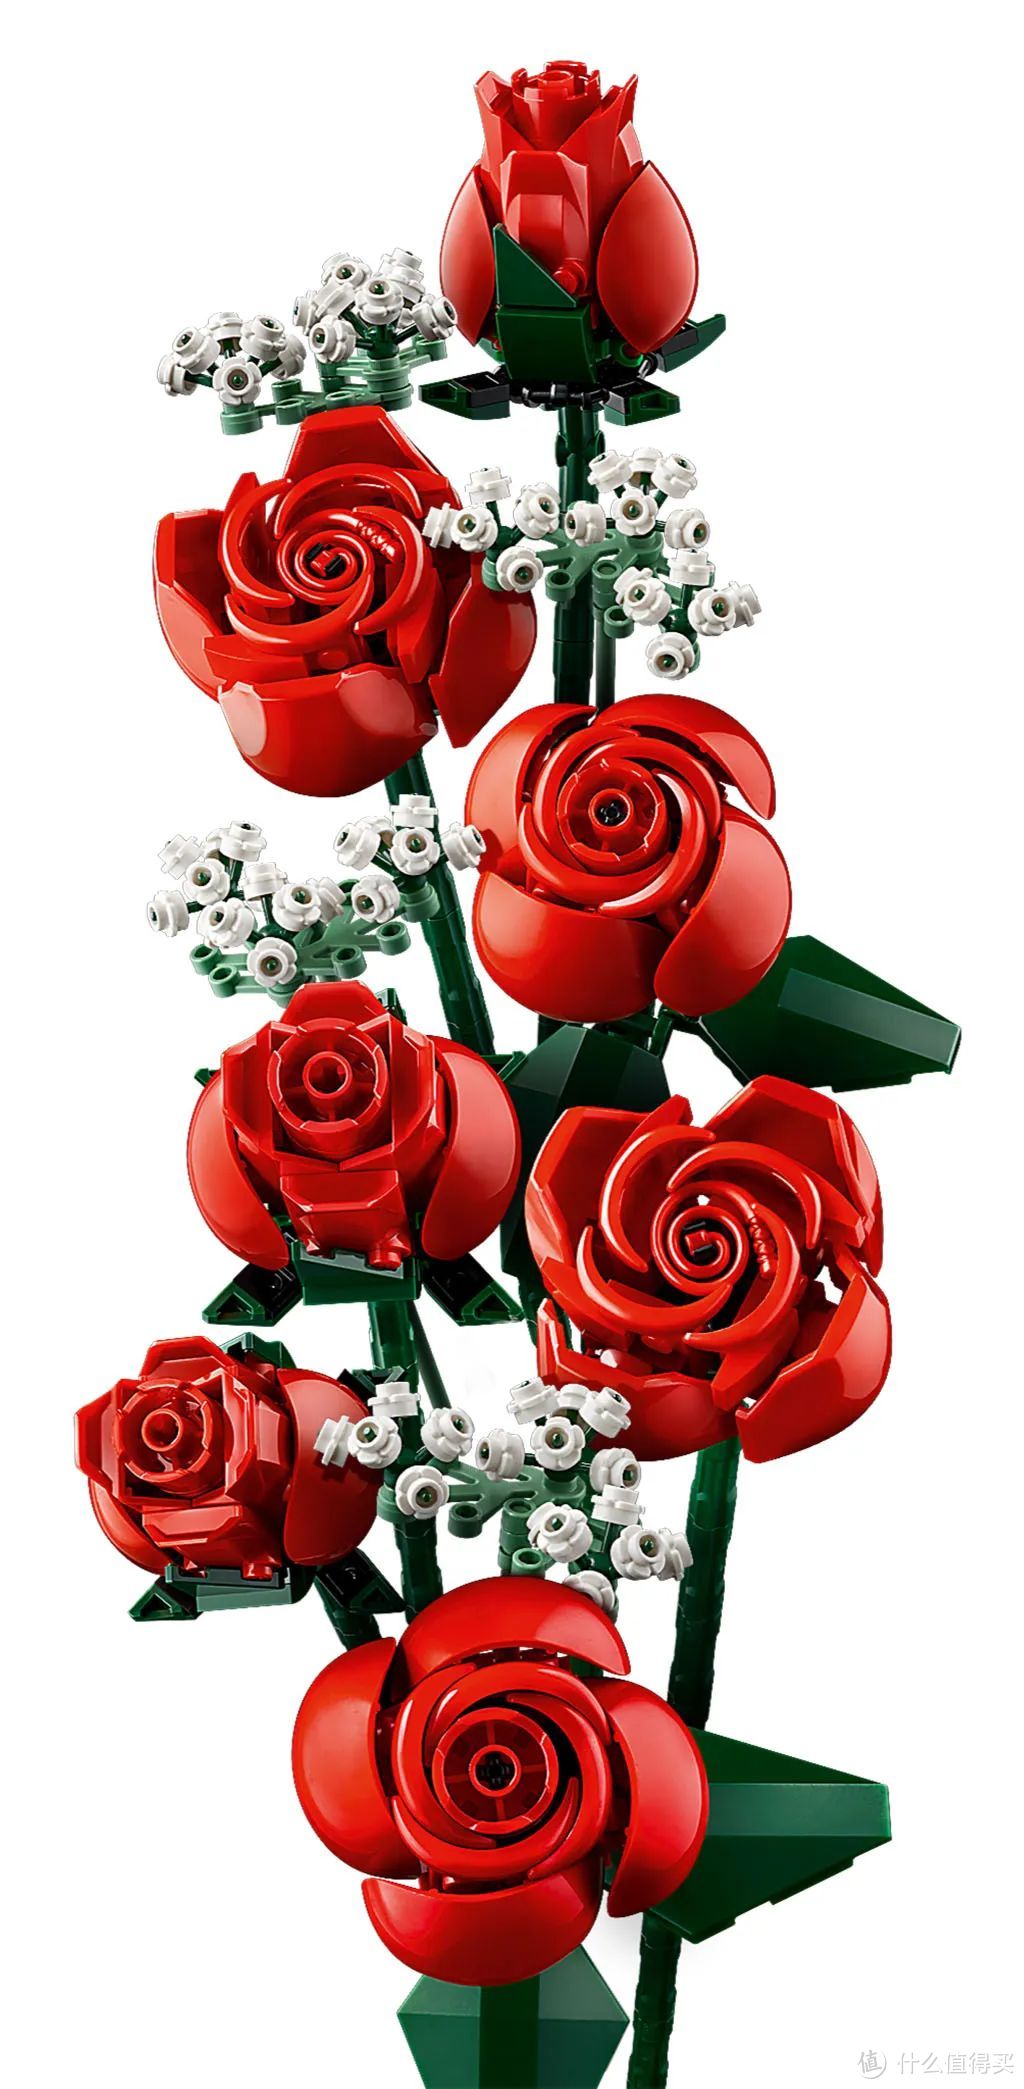 冬日里的一把火～乐高ICONS系列10328 玫瑰花束正式公布